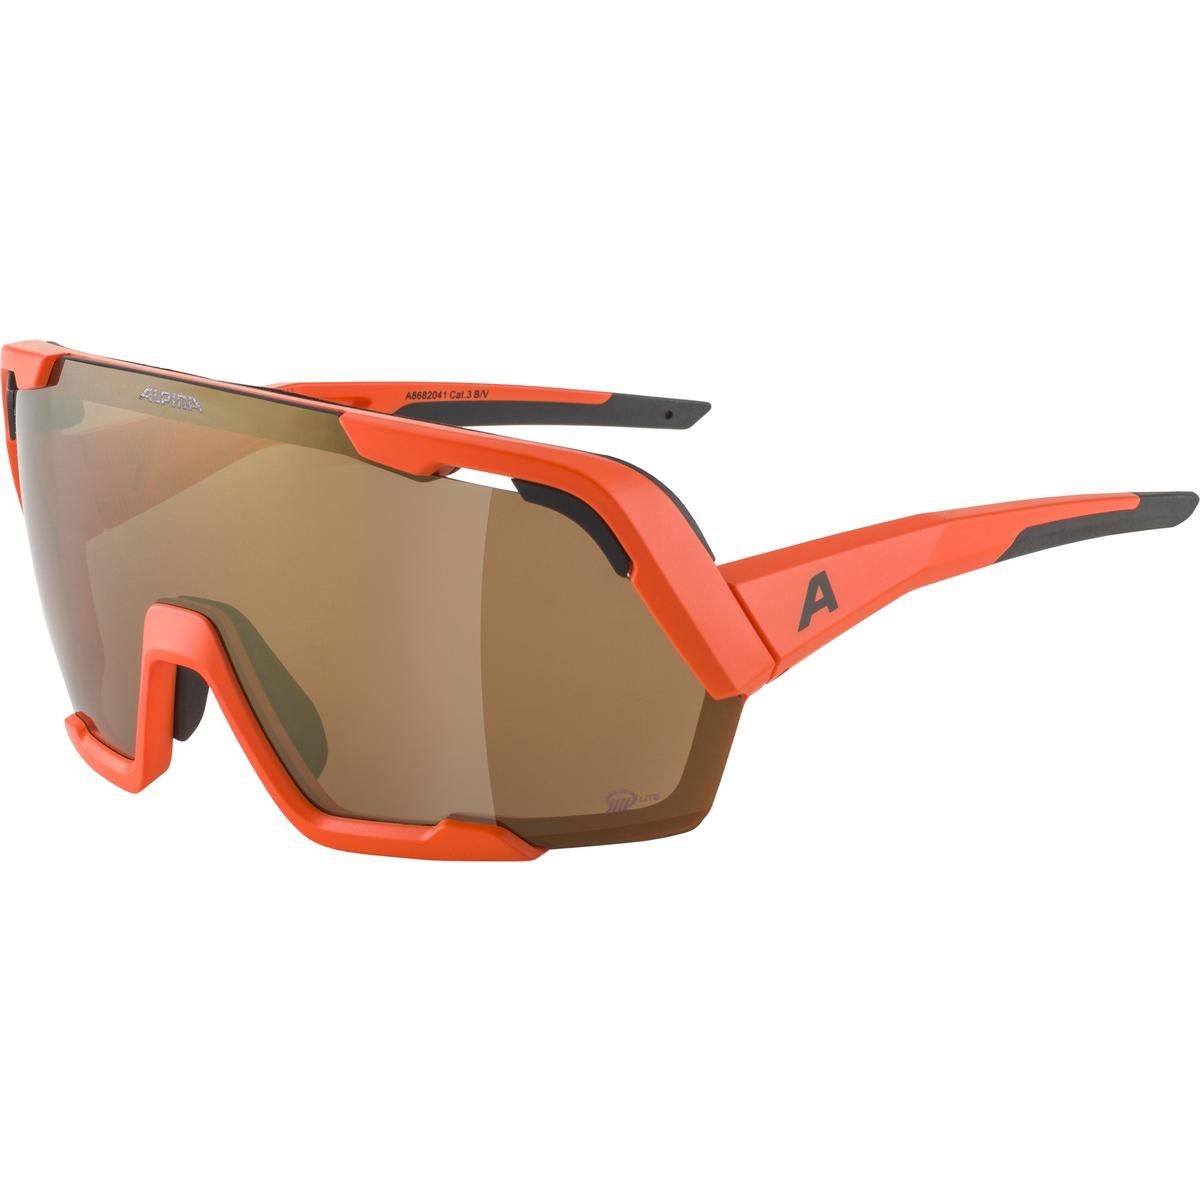 Kaufen Sie beliebte Artikel online Alpina Sonnenbrille Alpina A8682 Sportbrille Q-LITE orange BOLD ROCKET